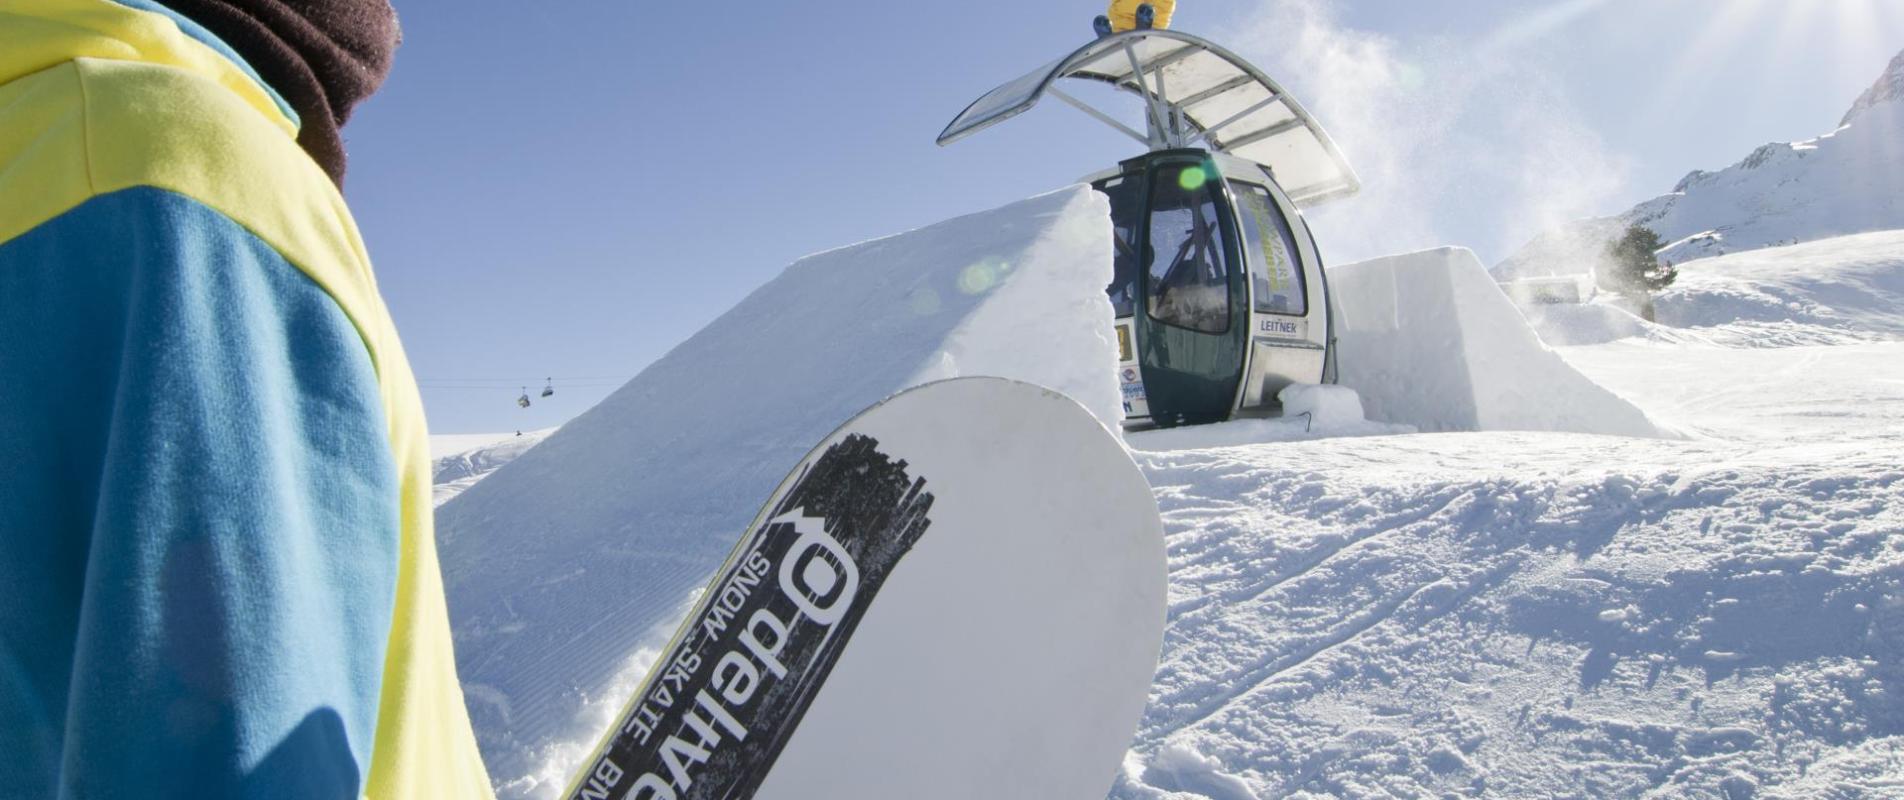 skifahren-snowpark-schoeneben-snowboard-vinschgau-af